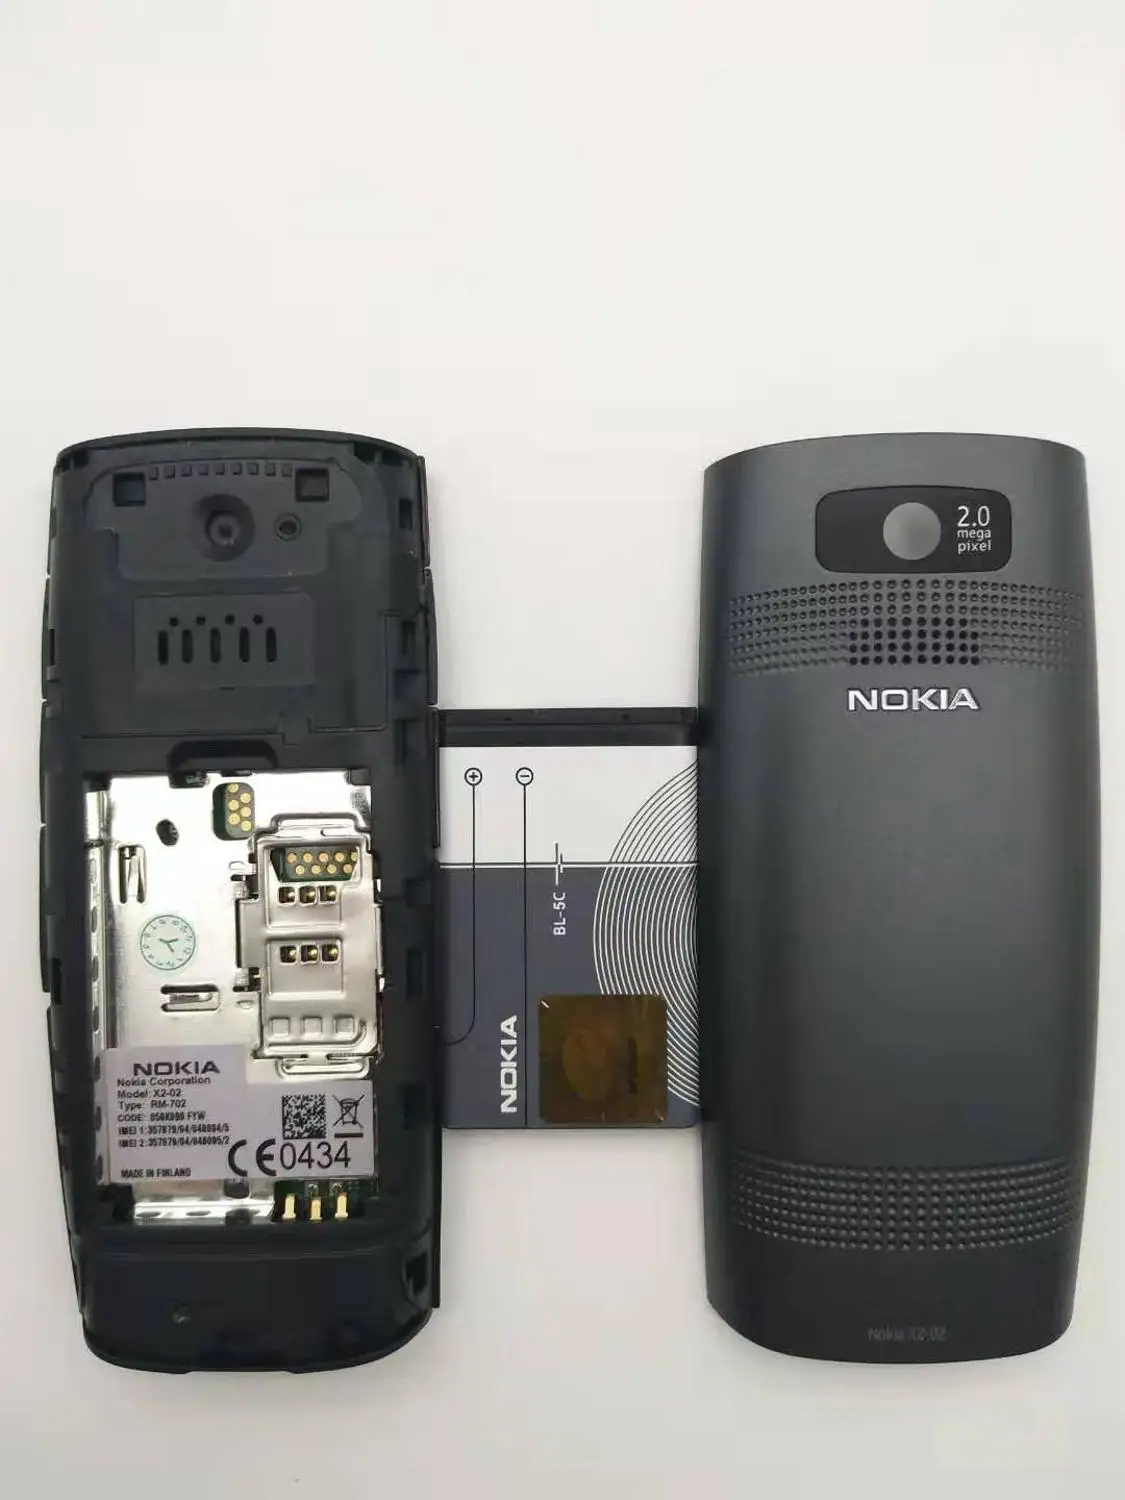 Разблокированный Nokia X2-02, одноядерный Symbian OS, Bluetooth, fm-радио, две sim-карты, 1020 мАч, черный и красный цвета, отремонтированный